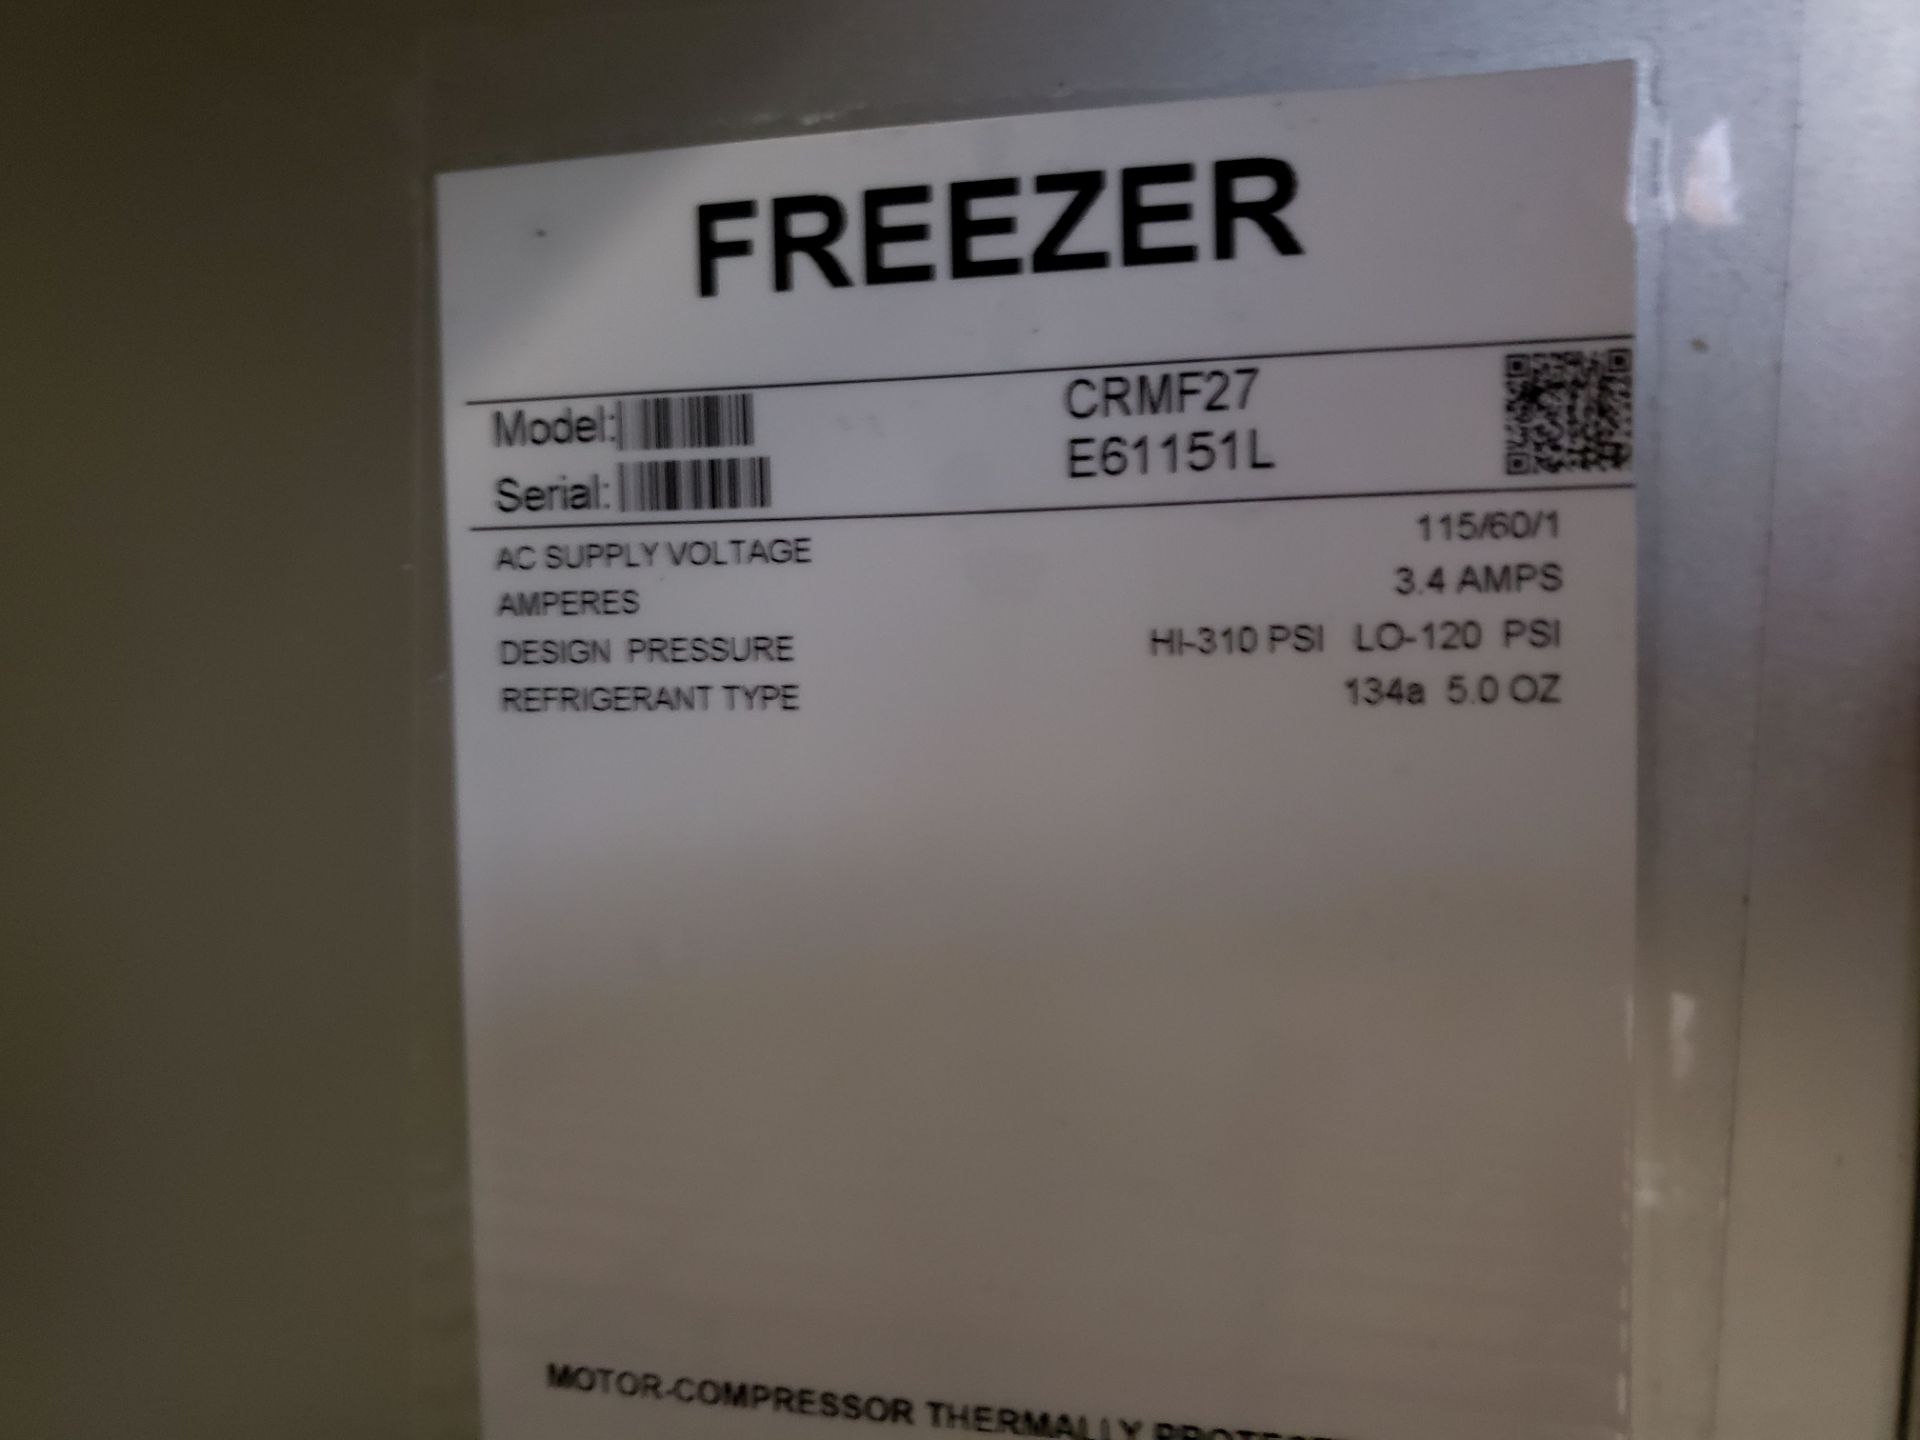 Hoshizaki 27" Under Counter Freezer - Model CRMF27 - Image 3 of 3